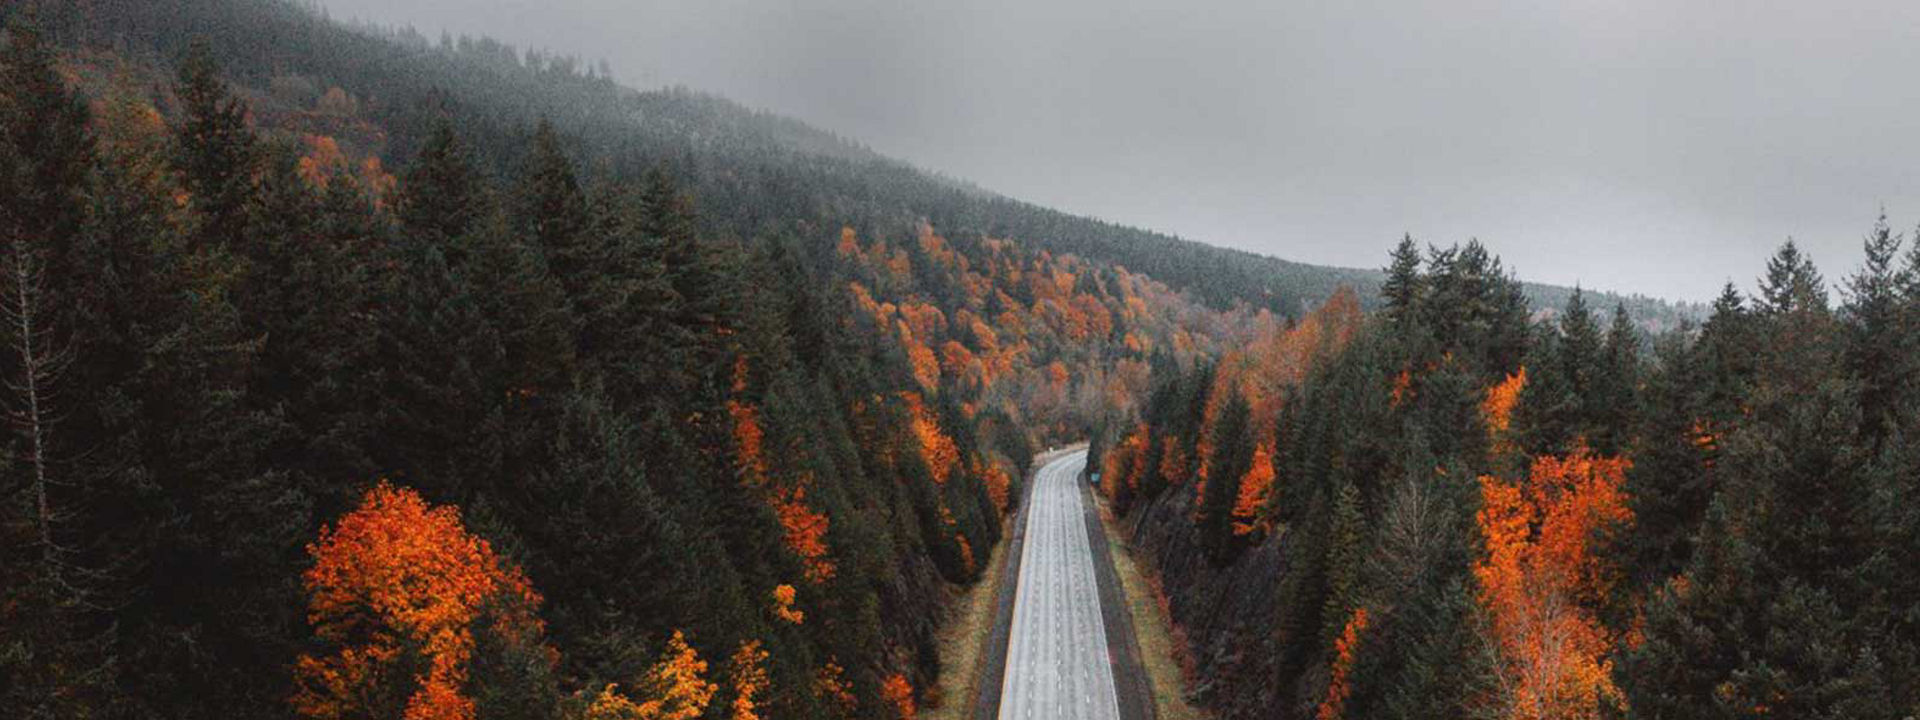 Zdjęcie przedstawia pustą drogą prowadzącą przez jesienny las, informując o tym, że model Weather Control to opony wielosezonowe